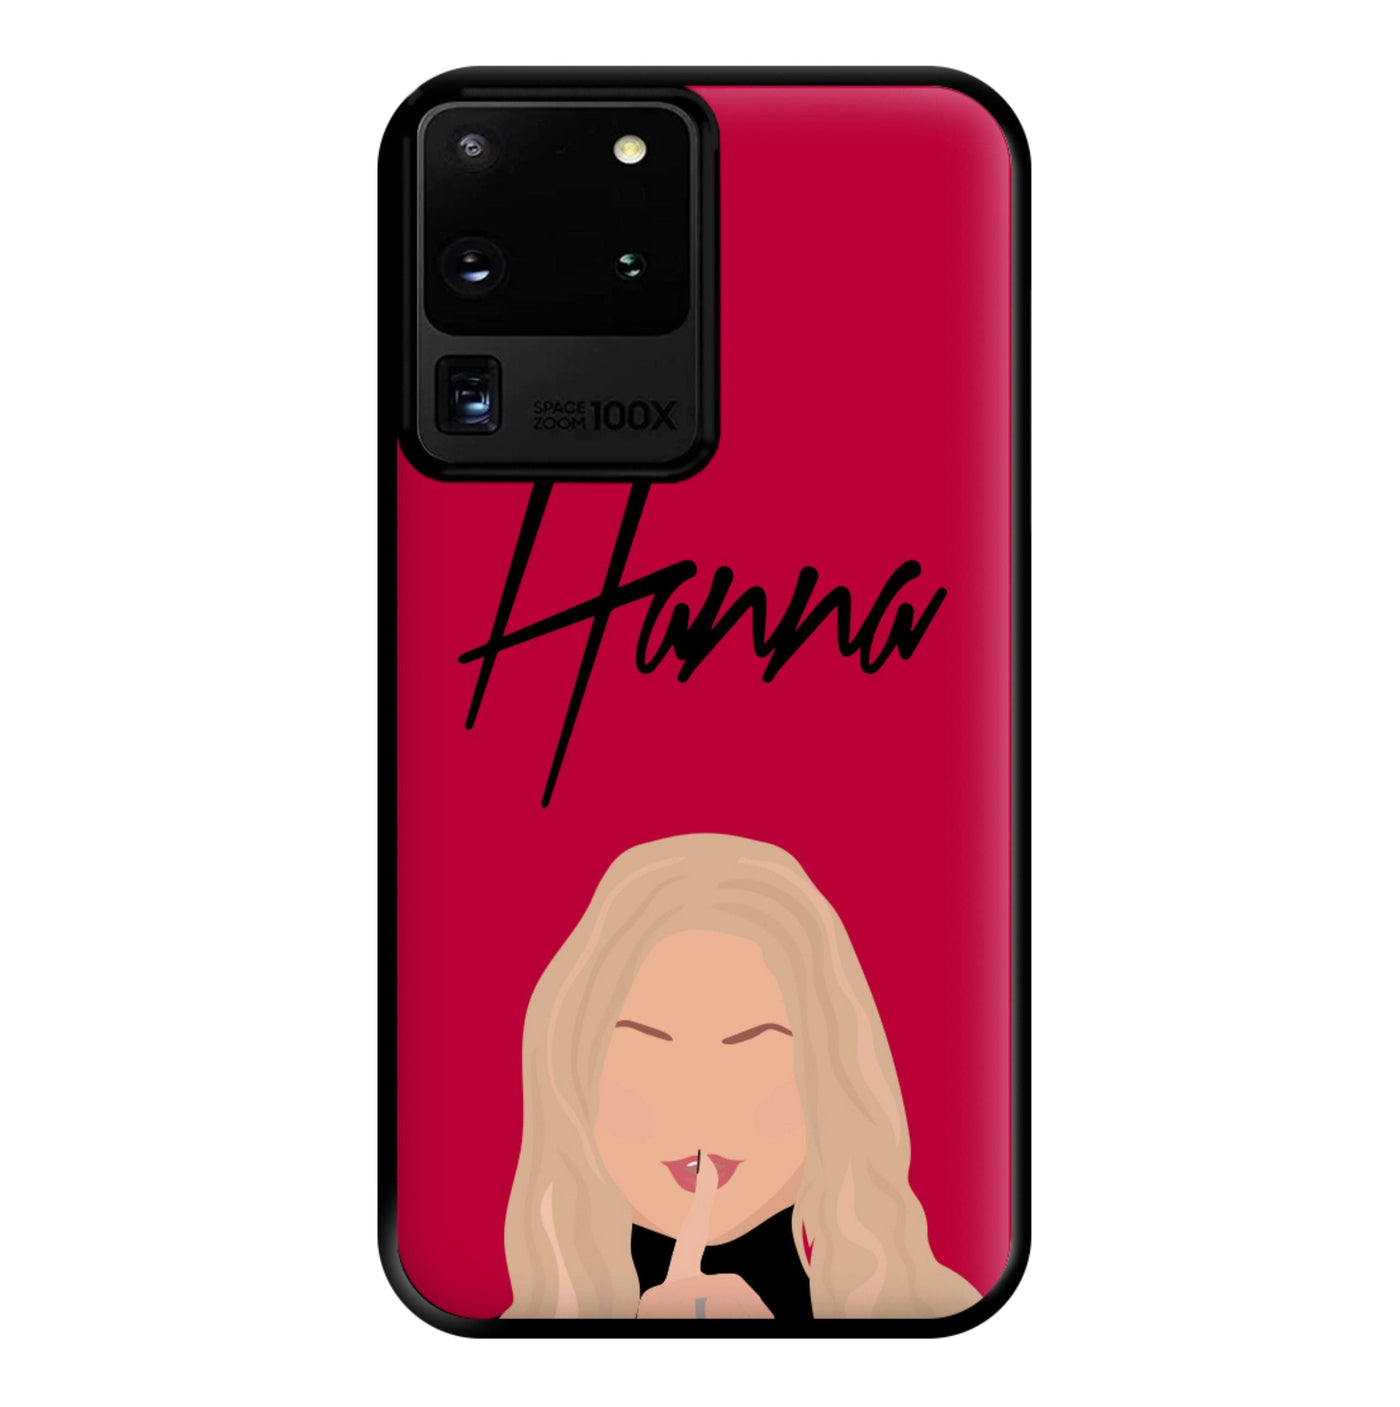 Hanna - Pretty Little Liars Phone Case